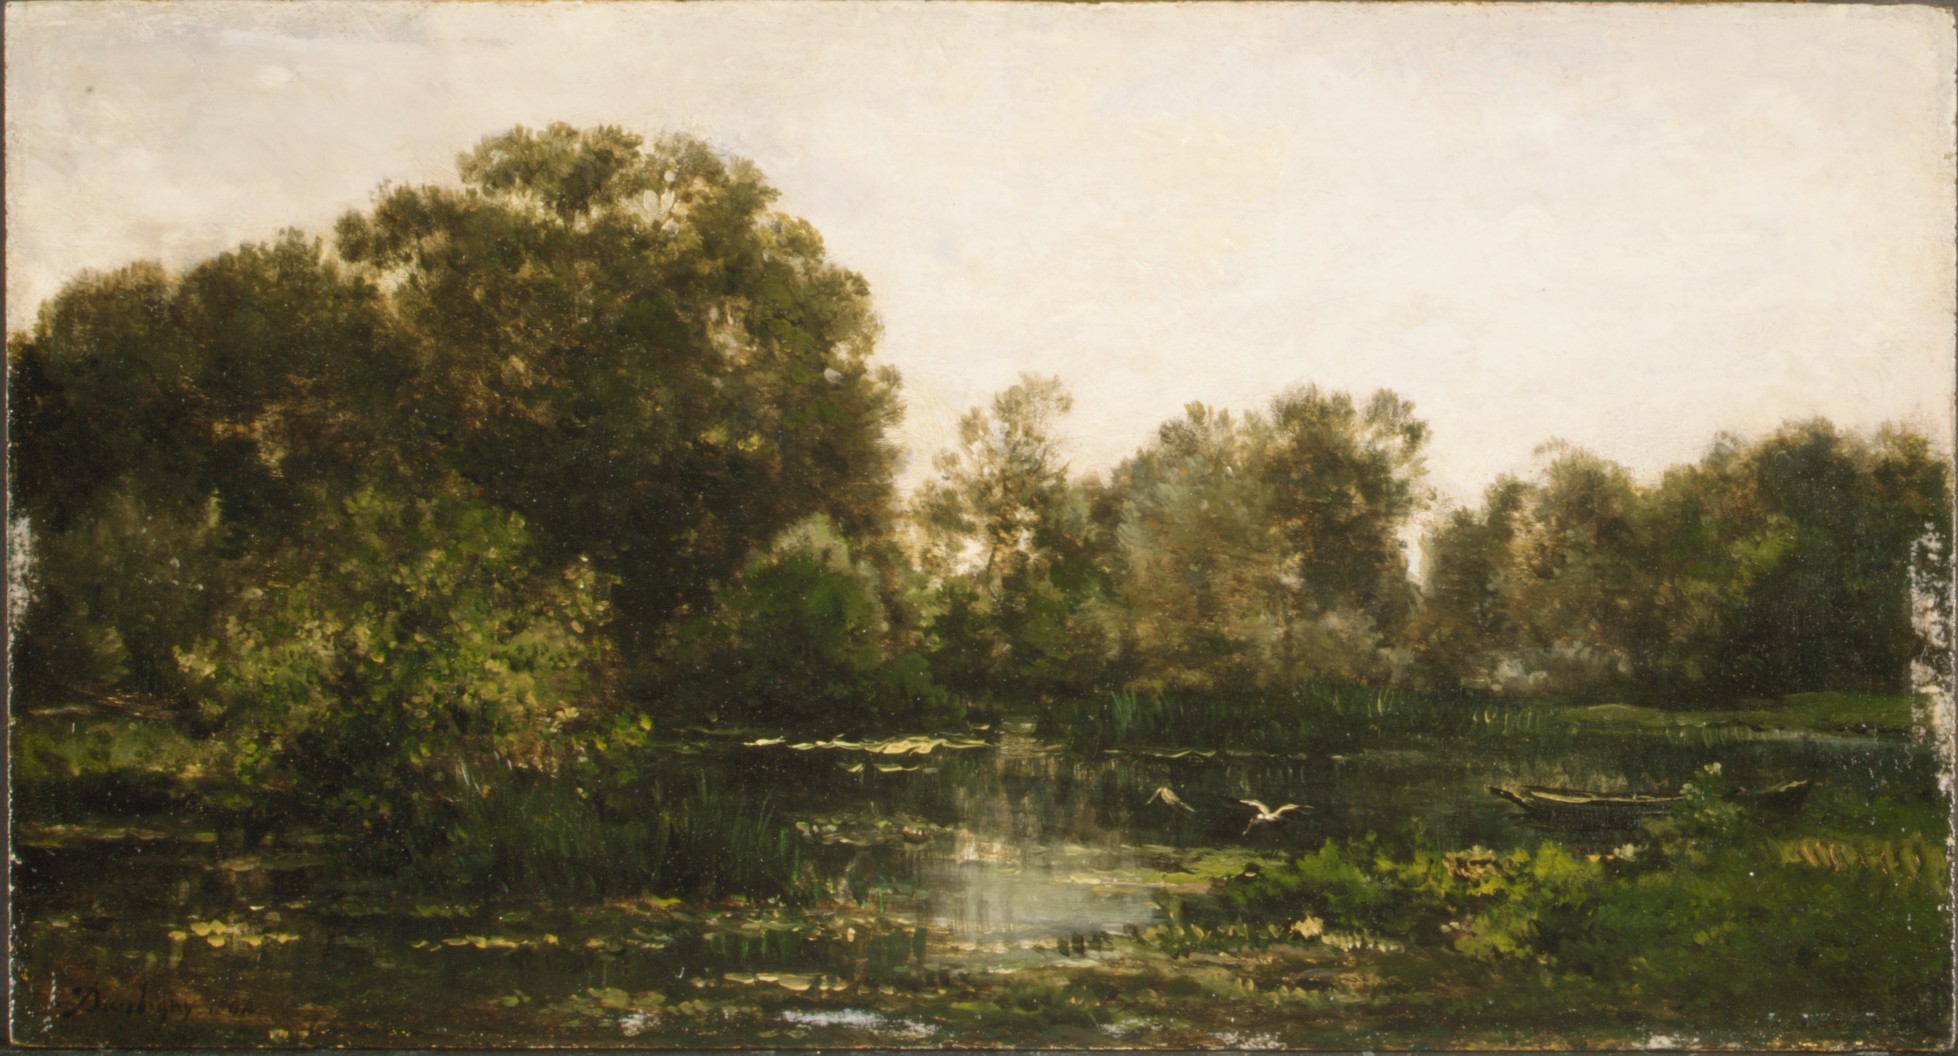 コウノトリのいる川の風景【1864】